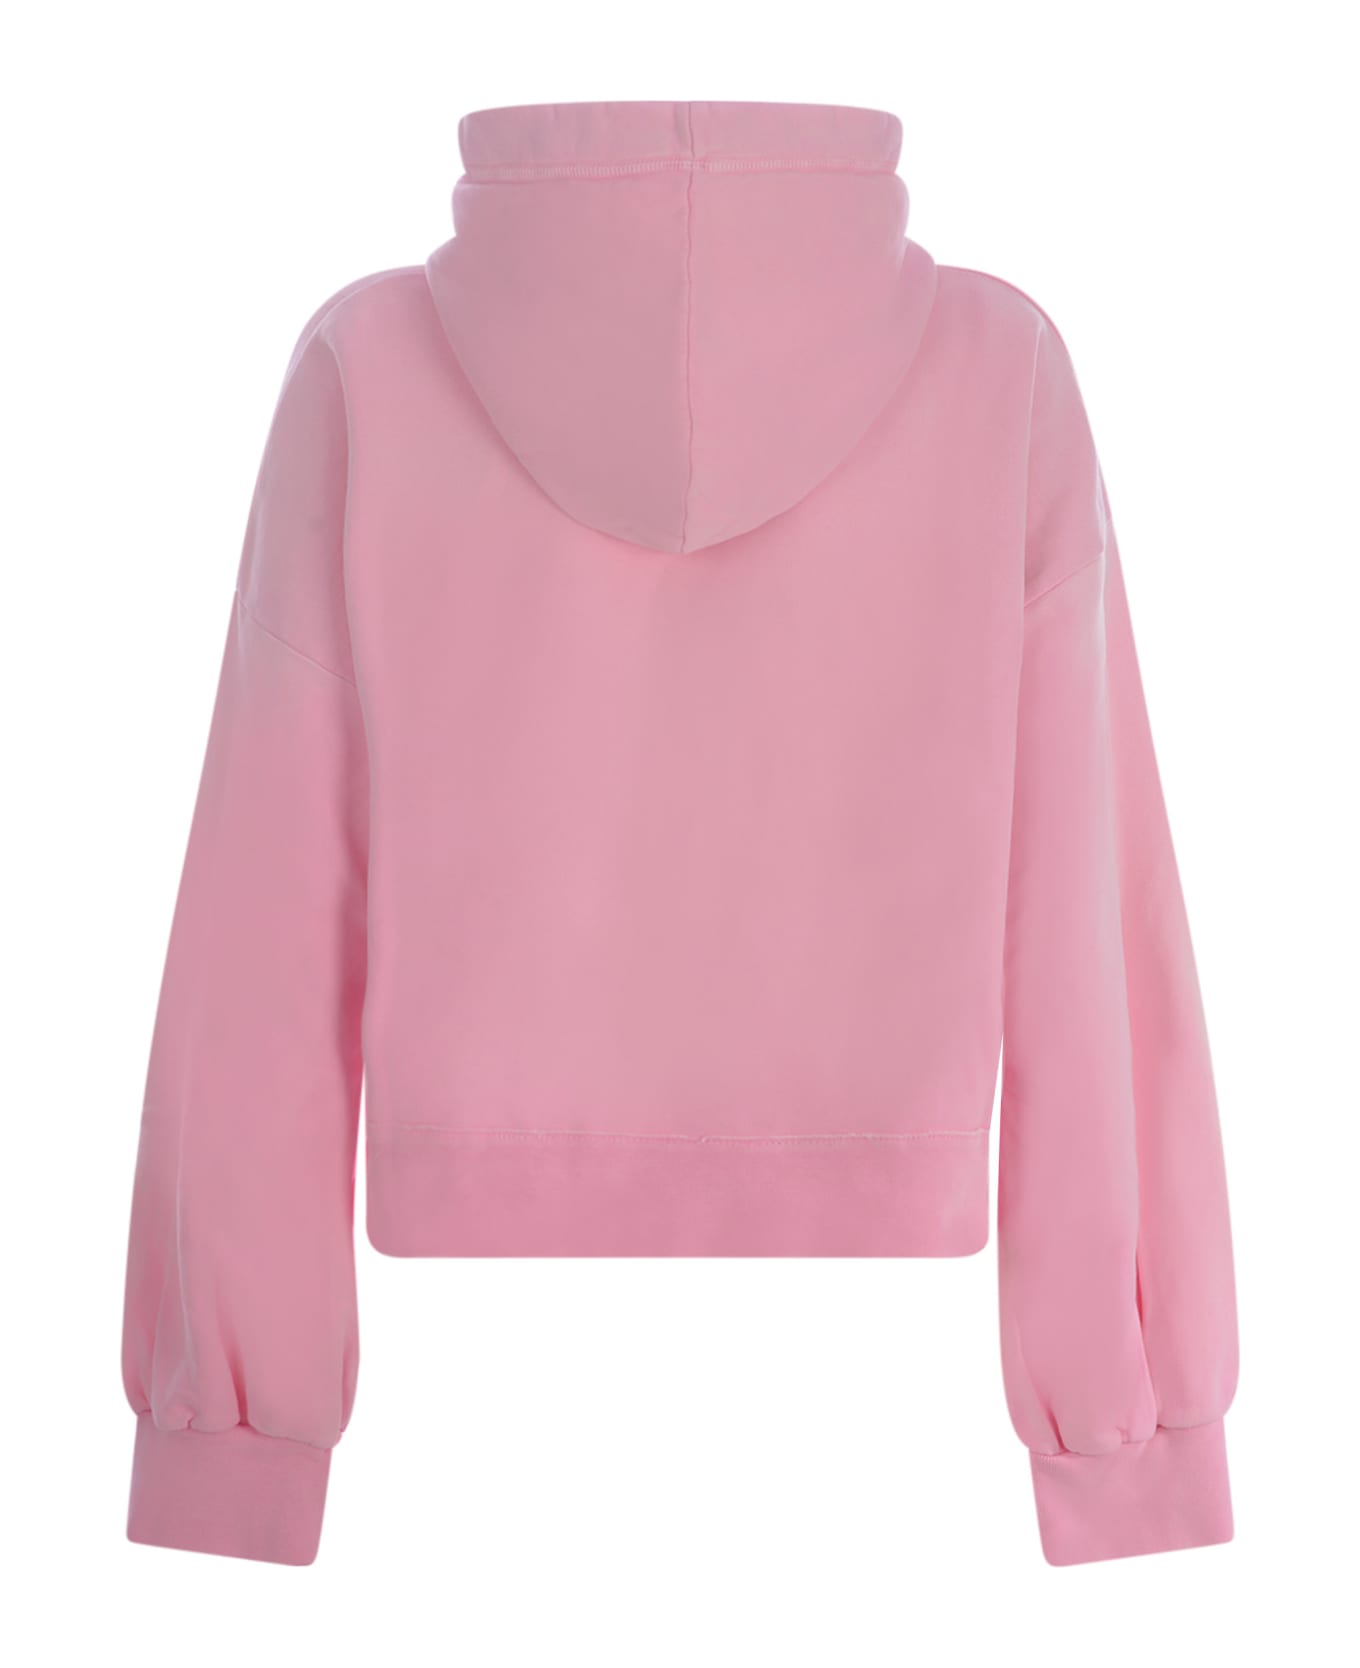 Dsquared2 Hooded Sweatshirt - Rosa フリース